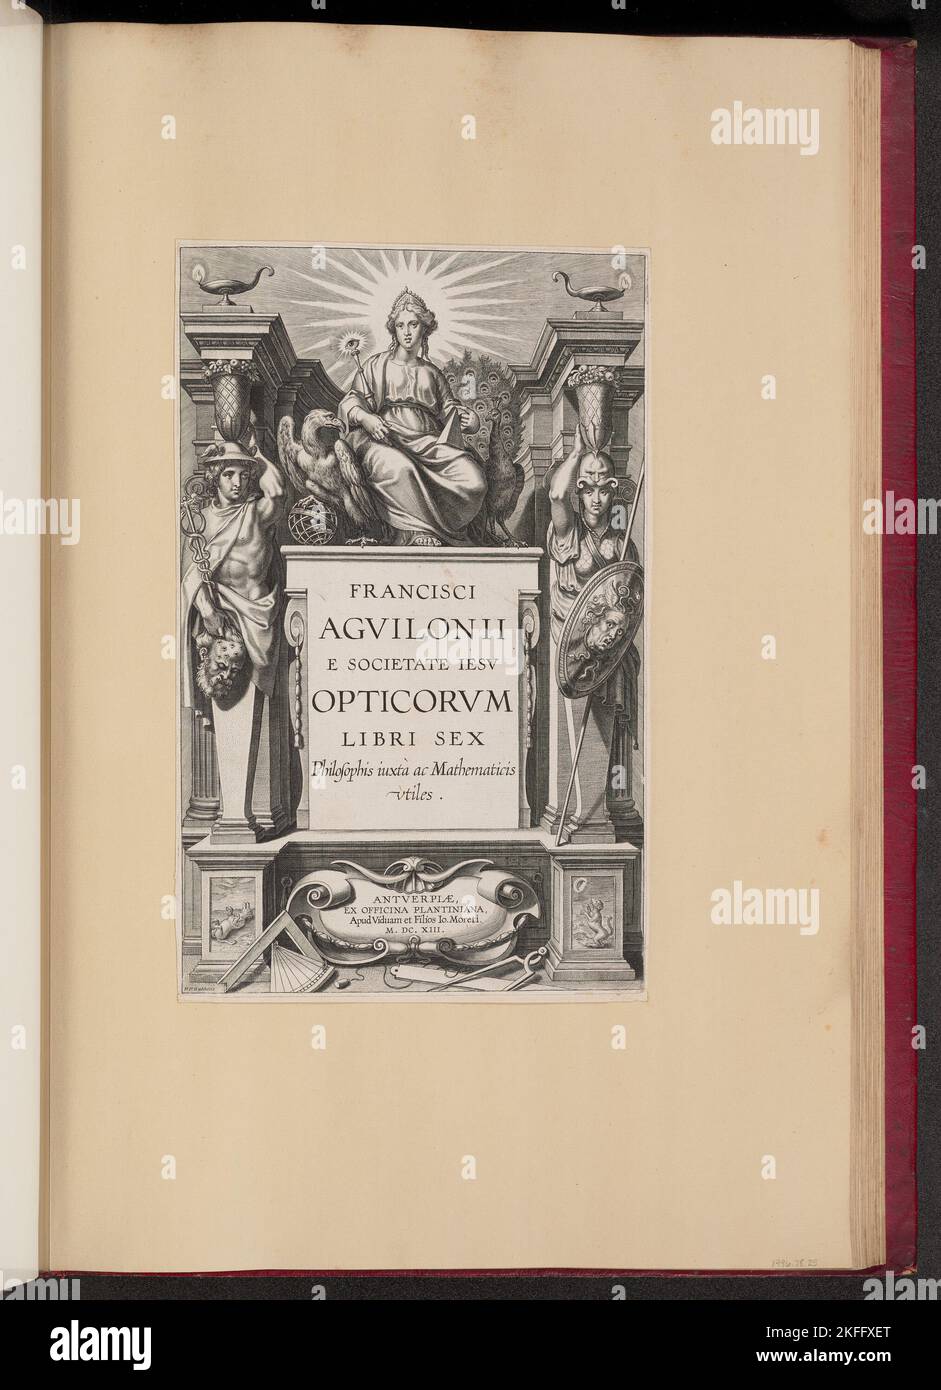 Pagina del titolo per Fran&#xe7;Opticorum Libri Sex di ois d'Aguilon, 1613. Foto Stock